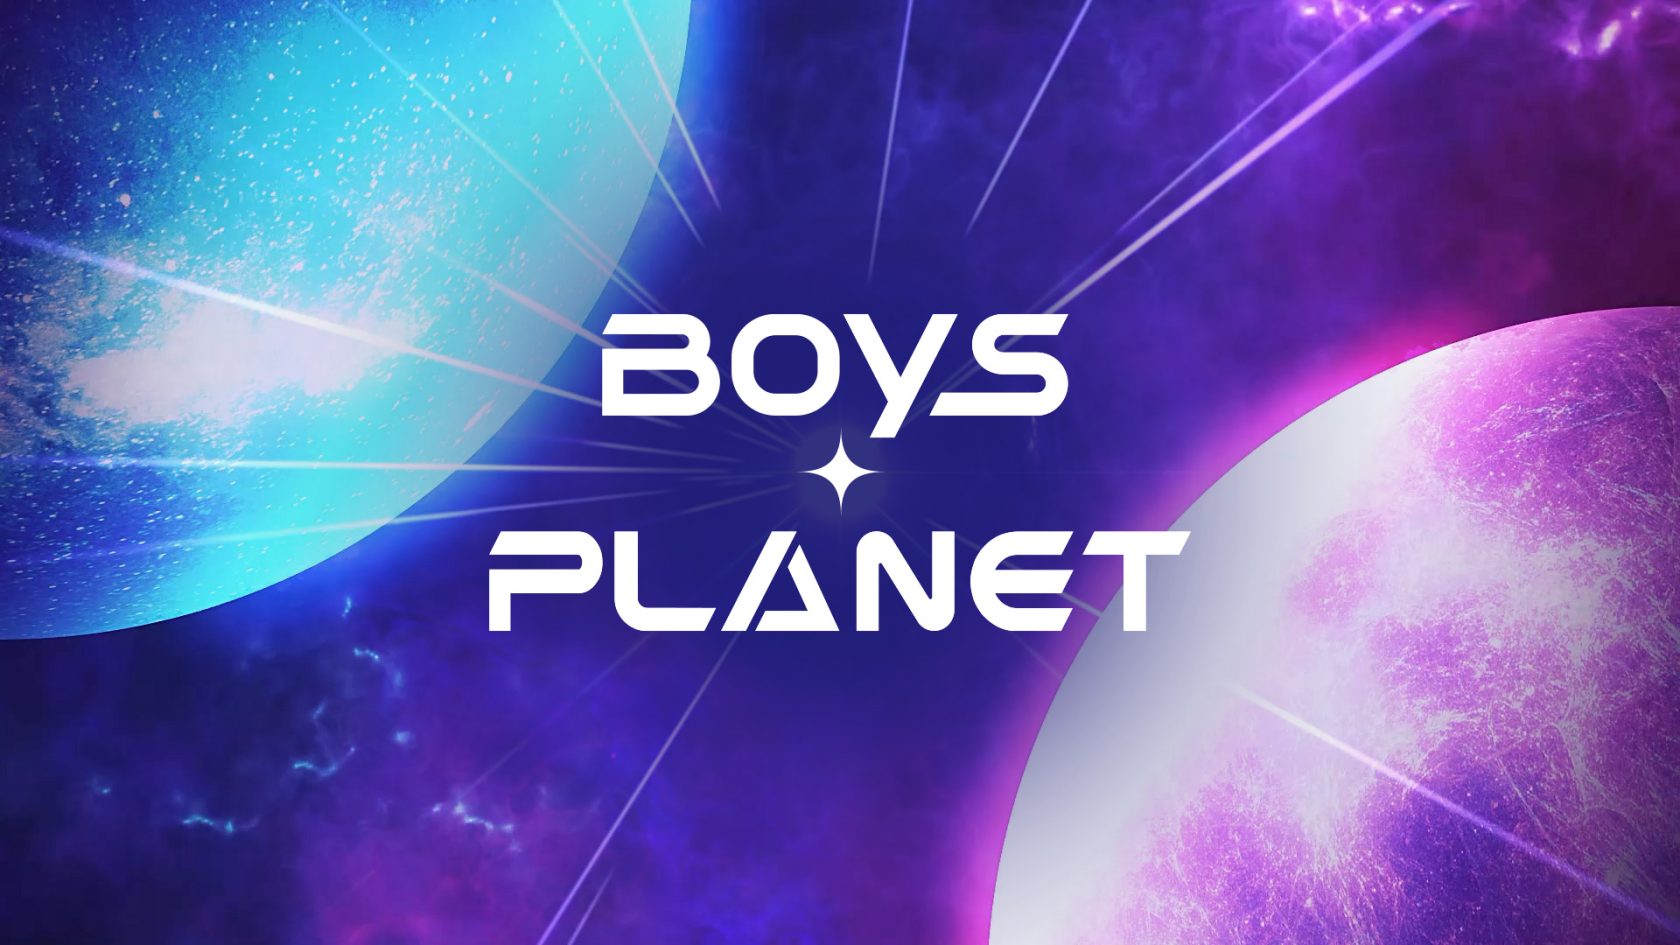 オーディション番組「BOYS PLANET」の舞台裏を描いた「BOYS PLANETビハインド」の字幕版での放送が決定